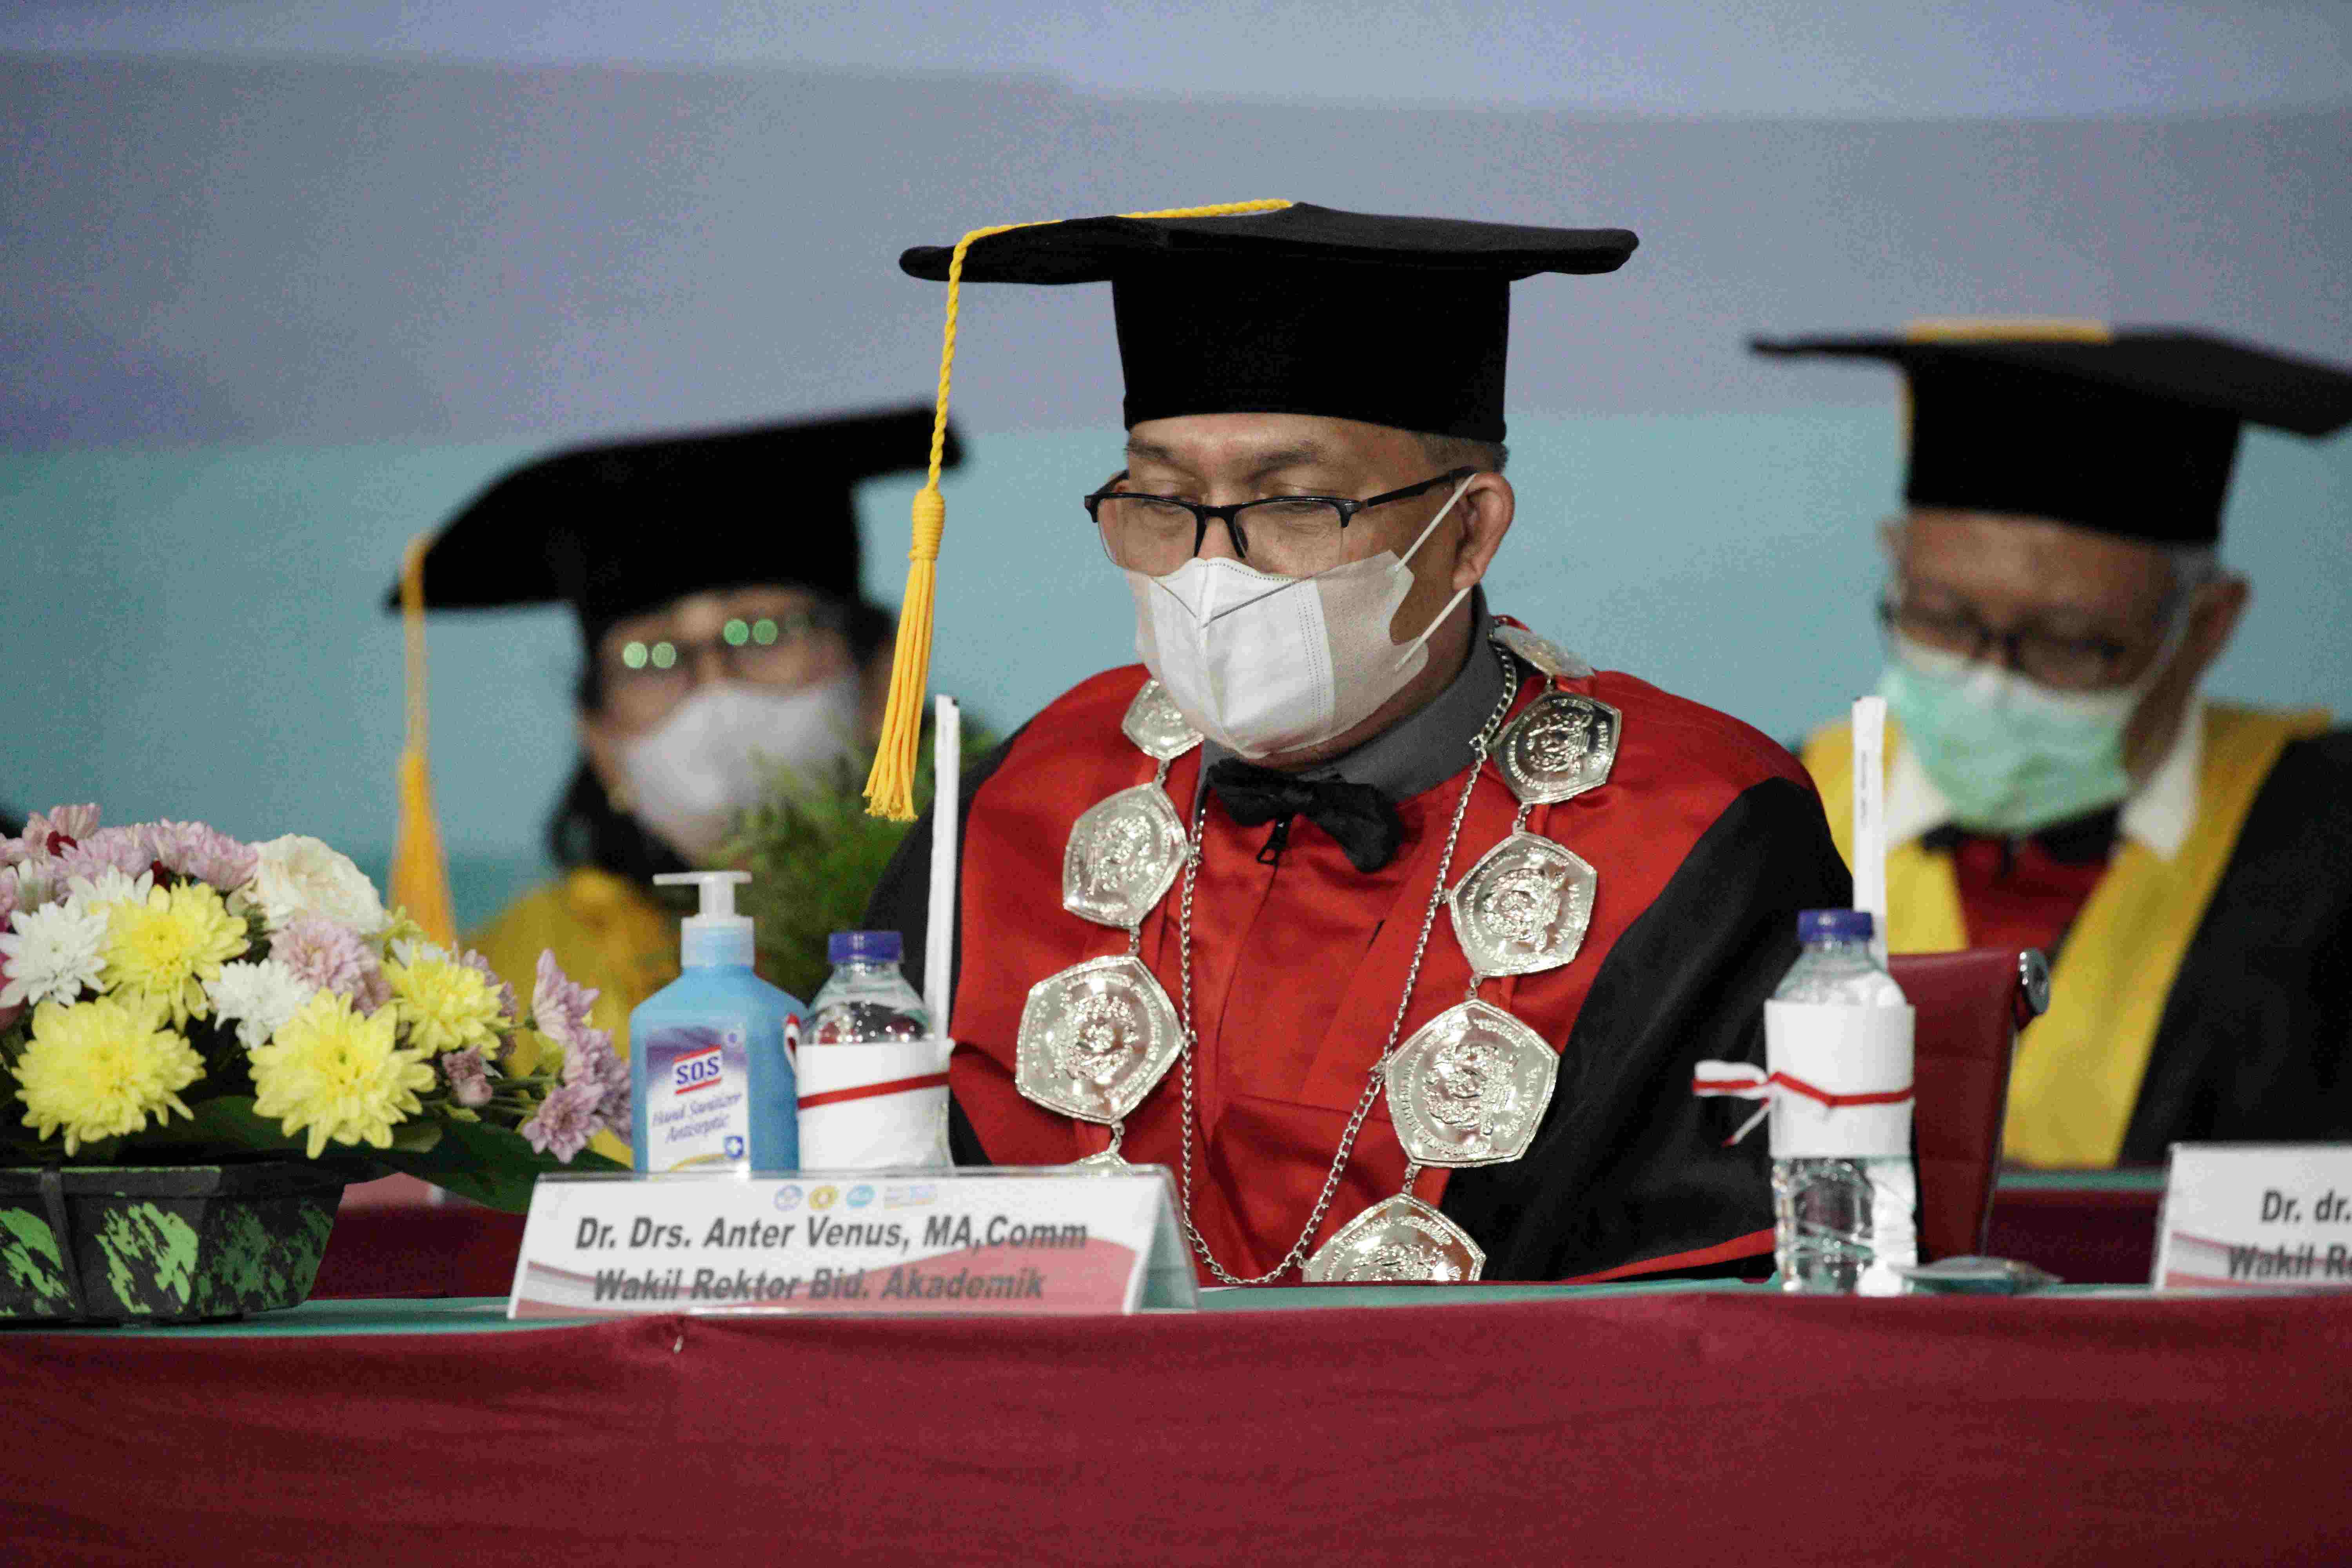 Pengukuhan Prof Dr Wicipto Setiadi SH MH Guru Besar bidang Ilmu Hukum Fakultas Hukum Universitas Pembangunan Nasional Veteran Jakarta (248)